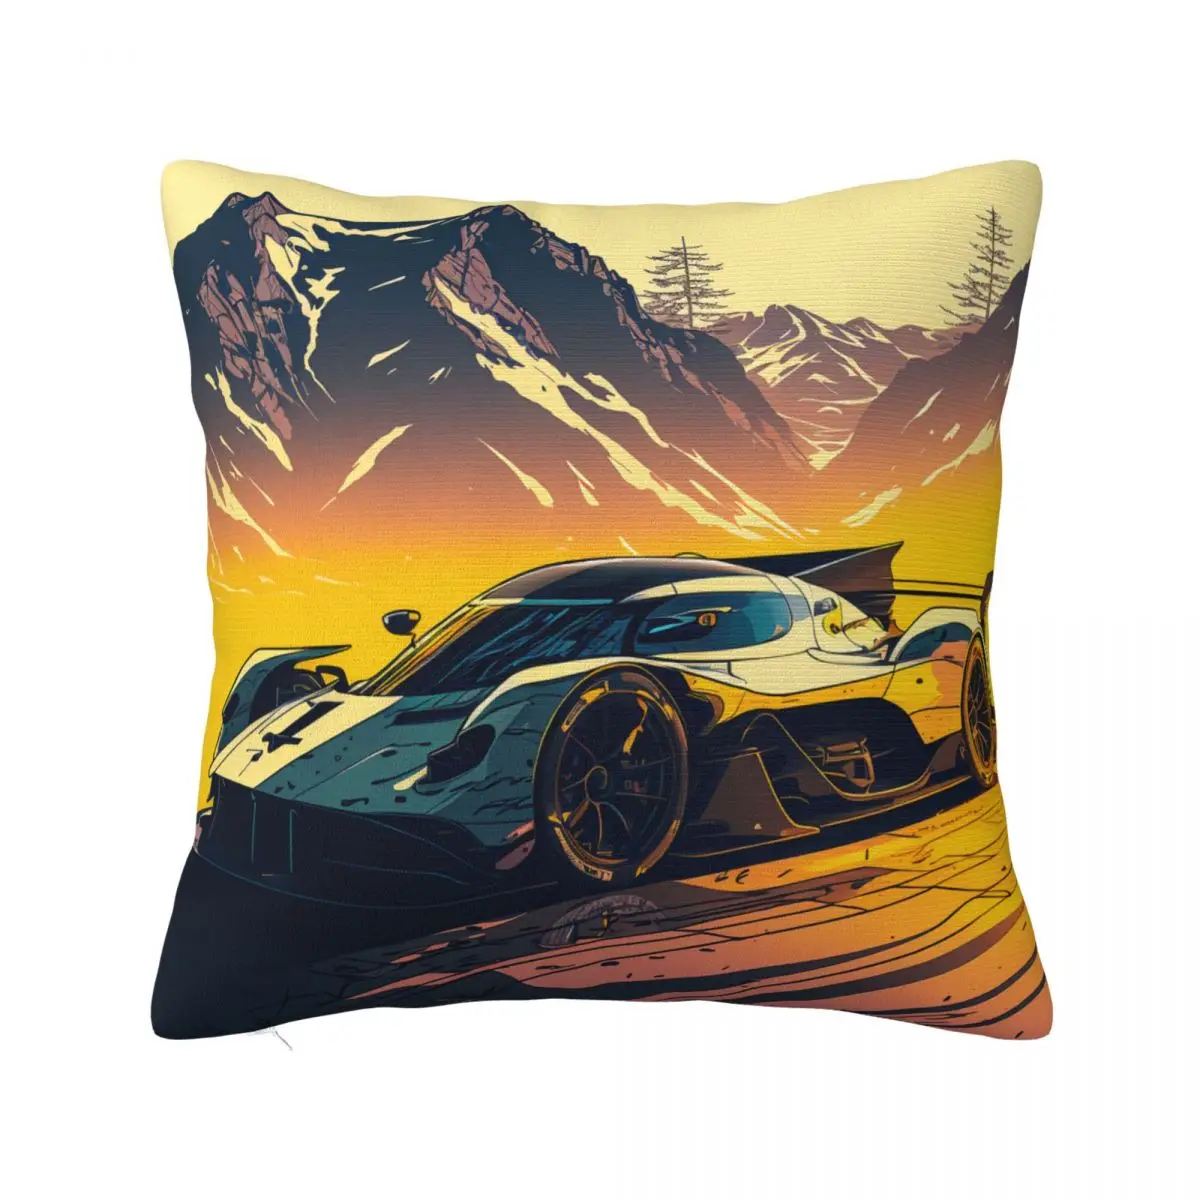 

Ослепительная подушка для спортивного автомобиля, разноцветная наволочка из полиэстера на молнии с изображением горного солнца, автомобиля, лета